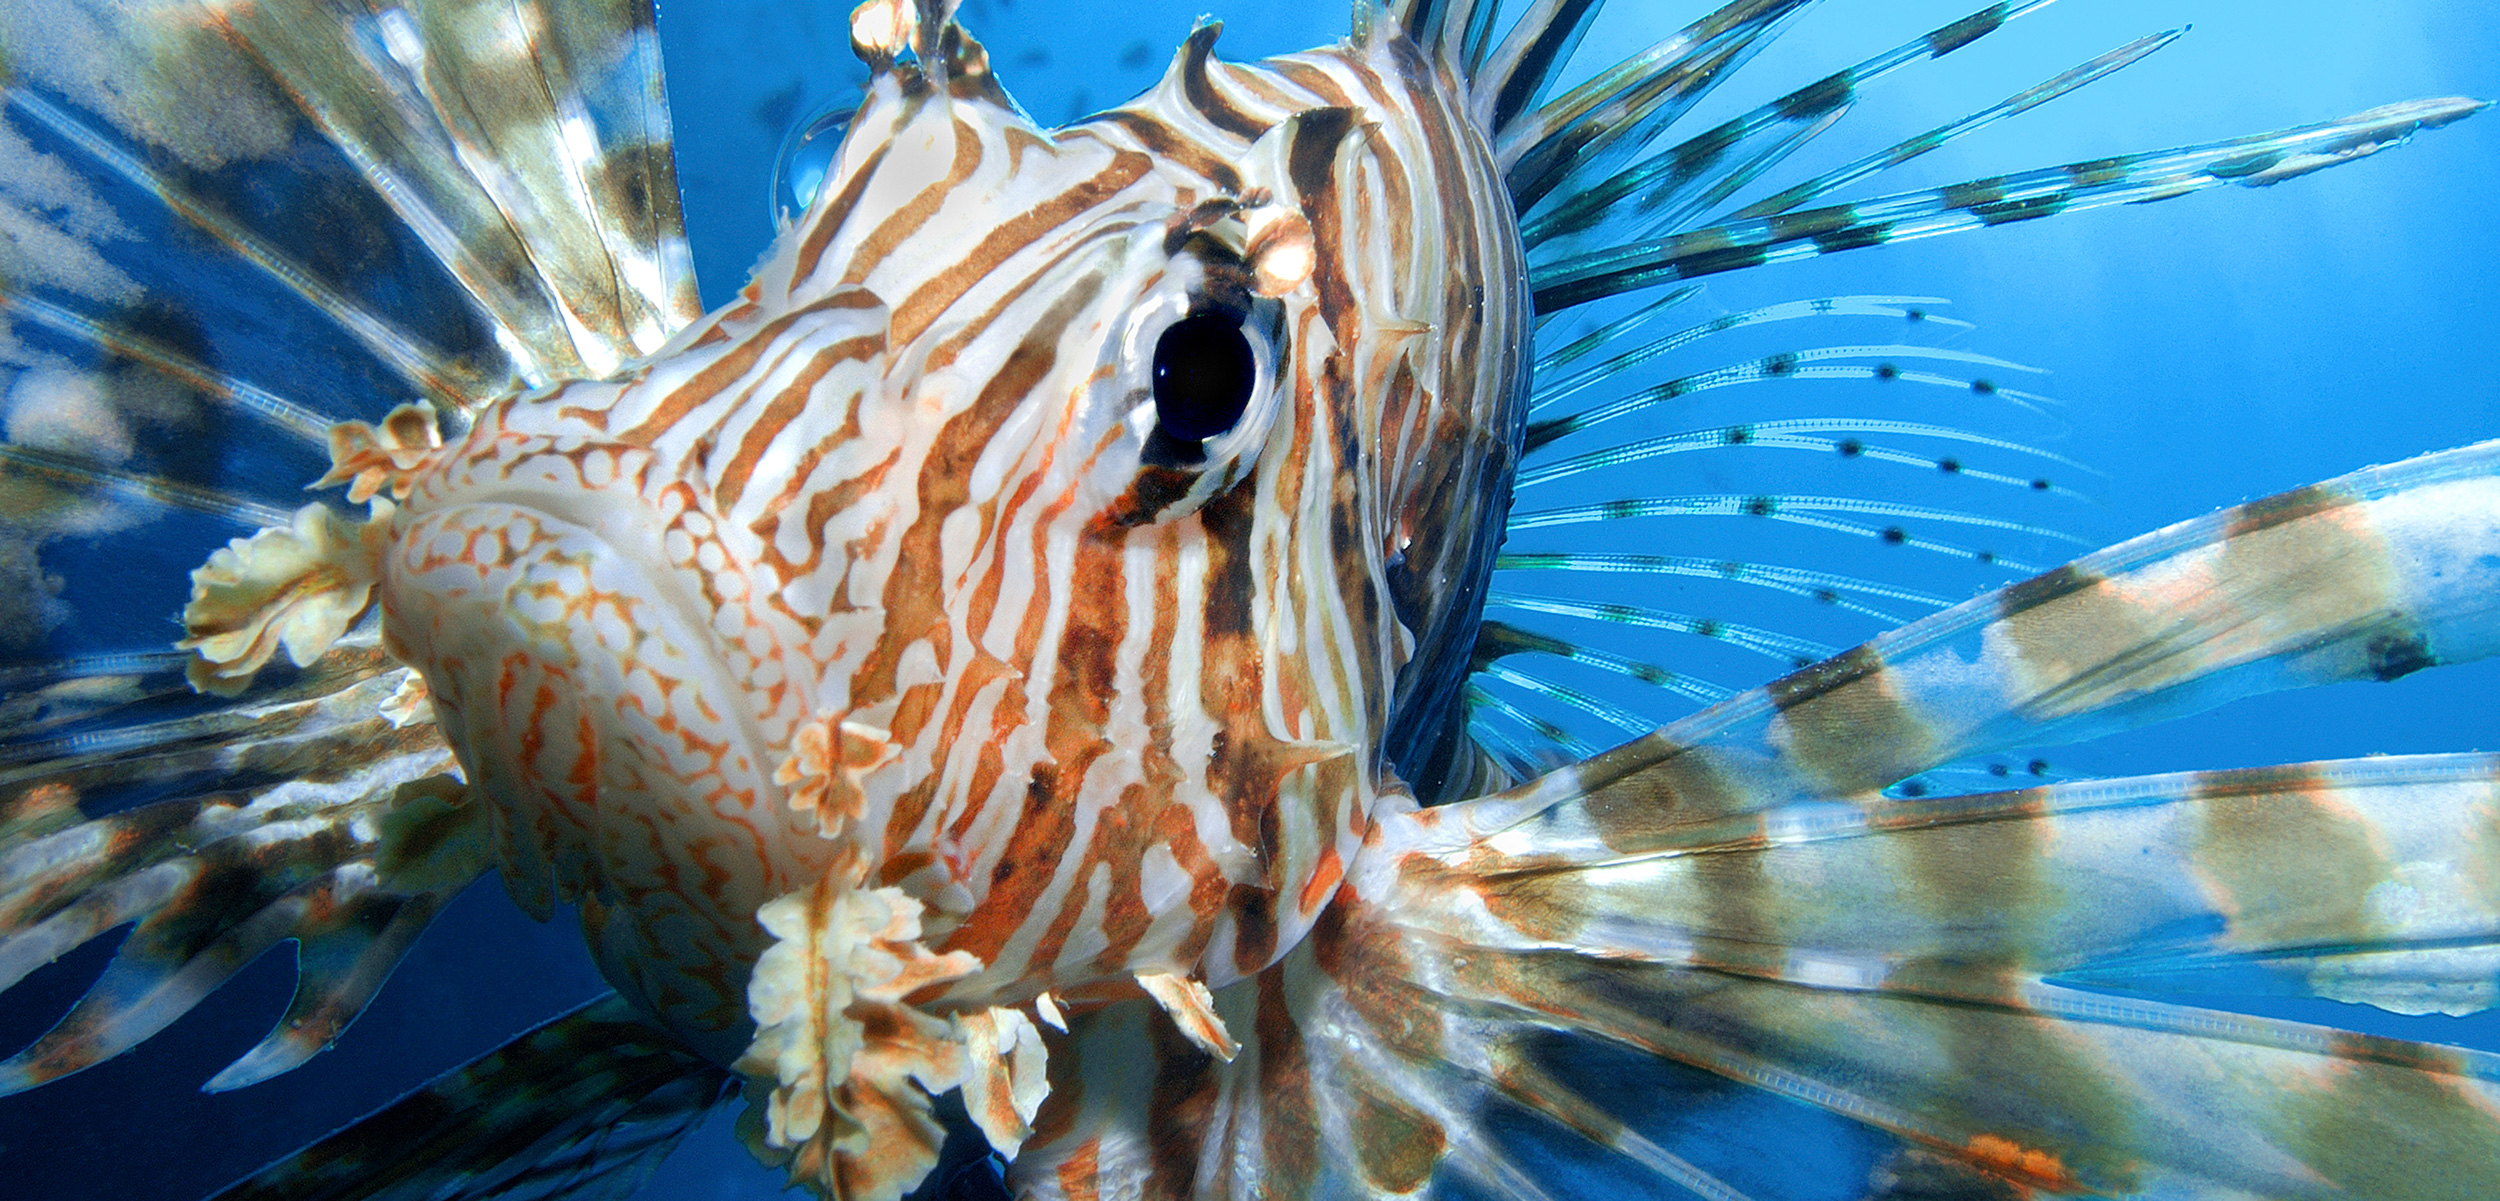 Invasive Lionfish May Be Superfish Hybrids | Hakai Magazine